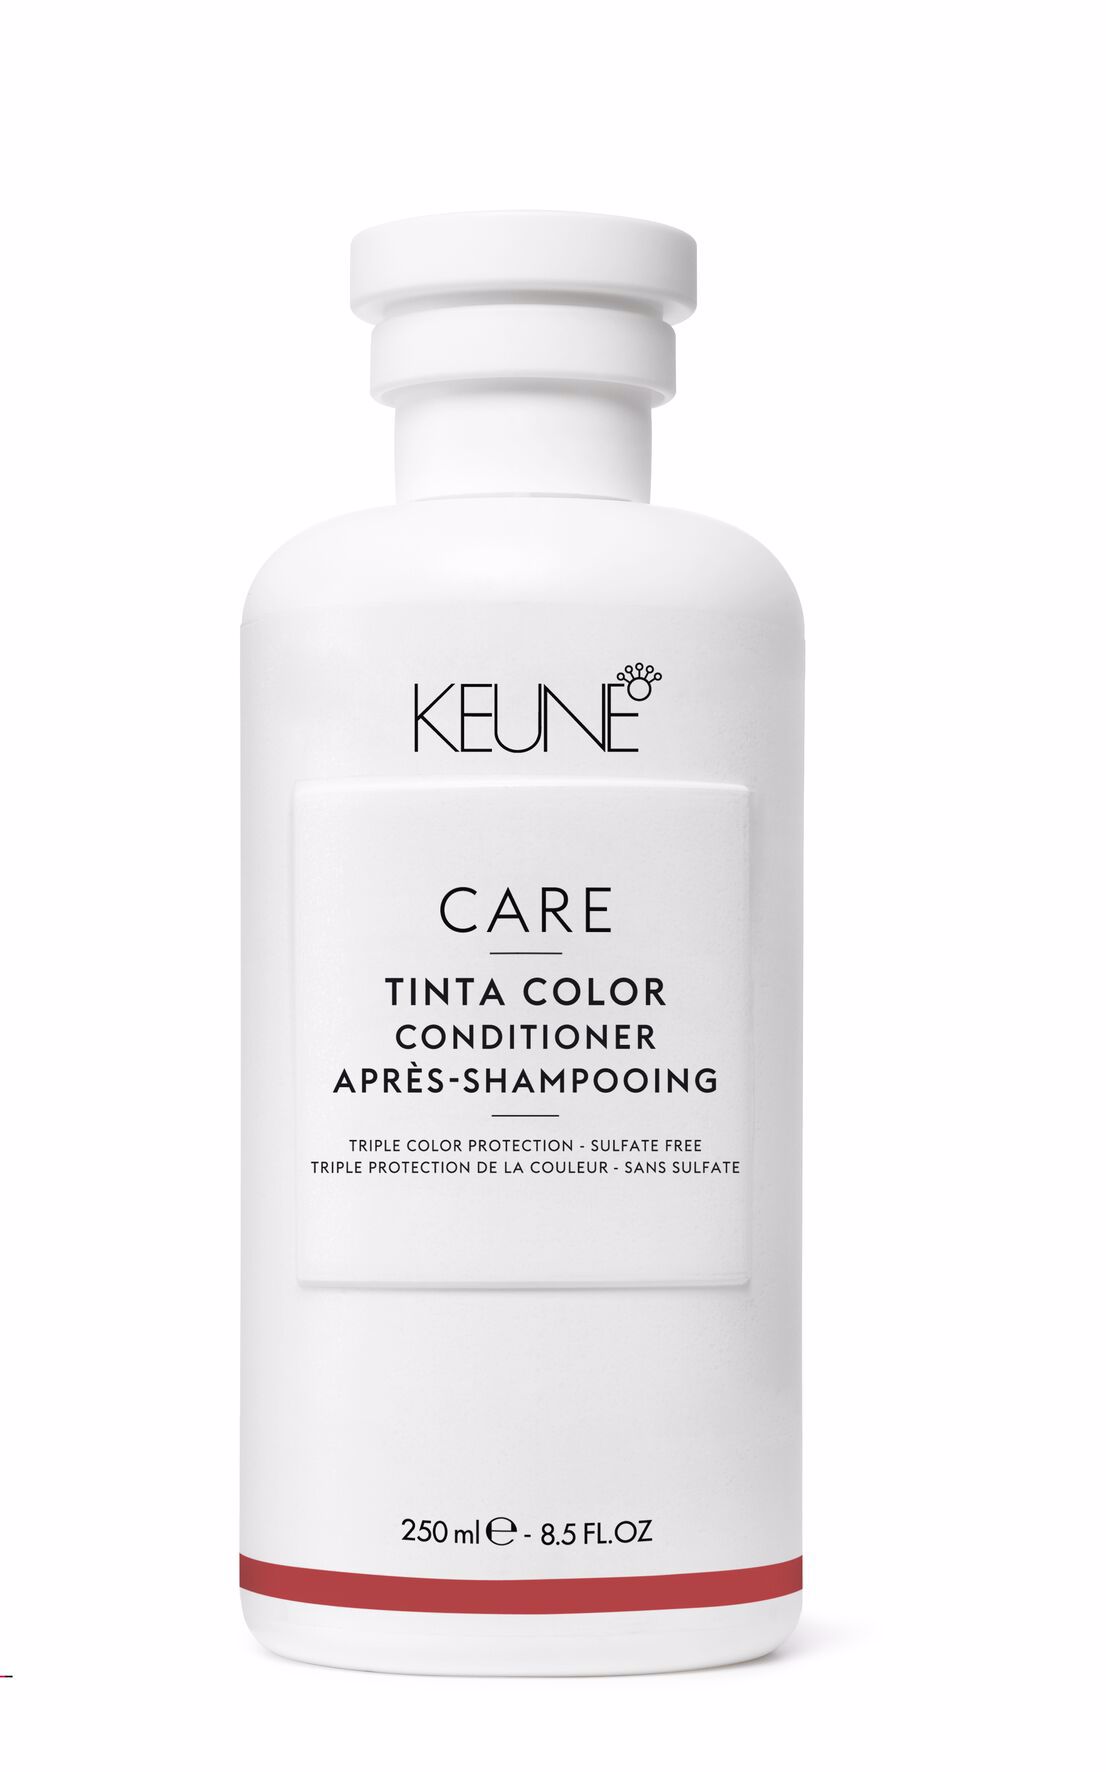 Care Tinta Color Conditioner est un produit capillaire qui revitalise et nourrit les cheveux, prévient la décoloration et offre une couleur durable et éclatante. Il est sans gluten.